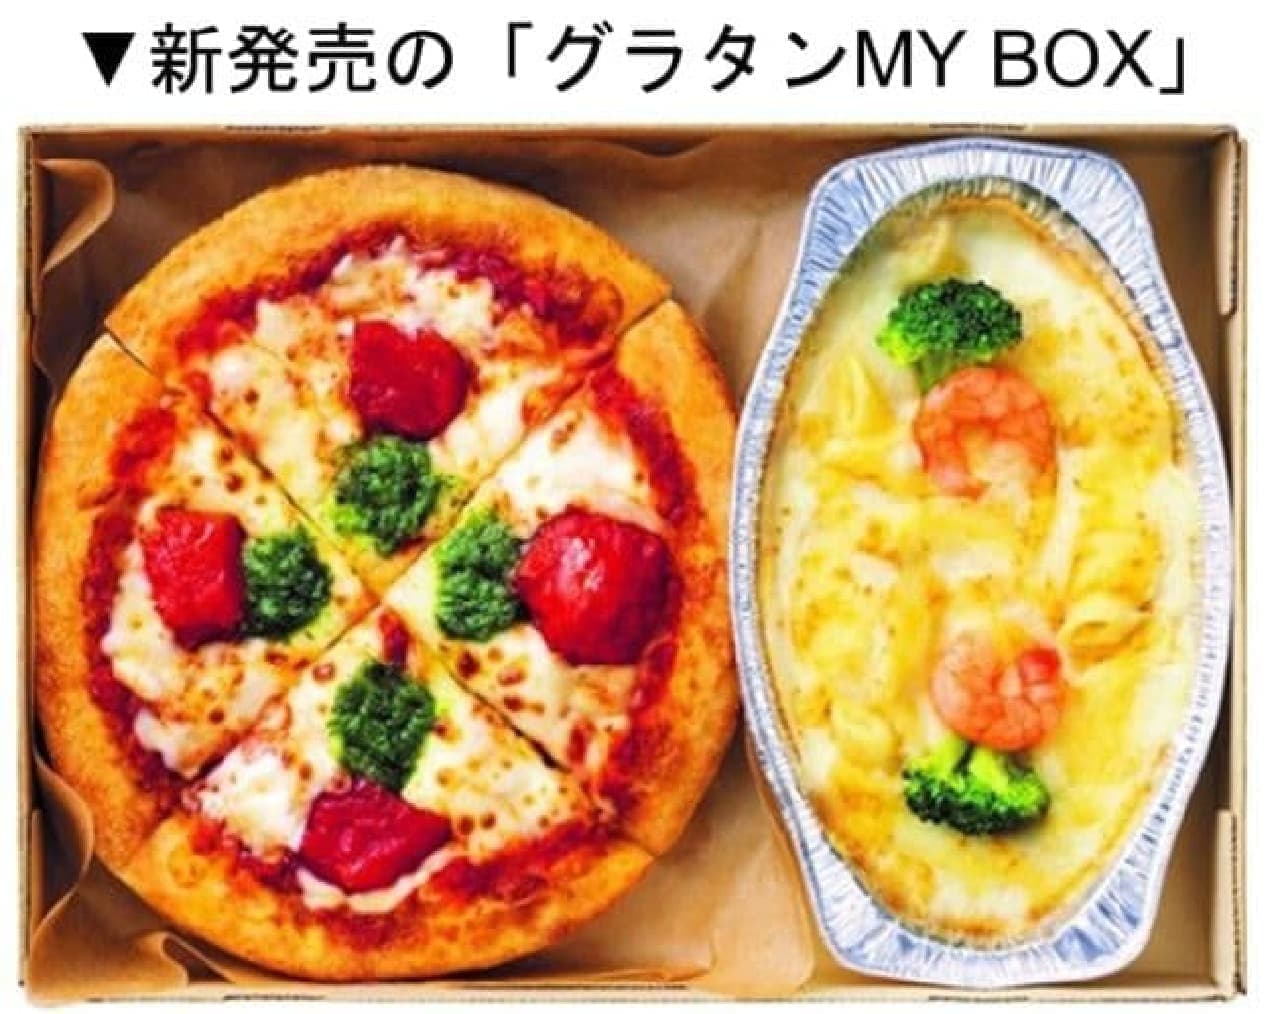 Pizza Hut "Gratin MY BOX"